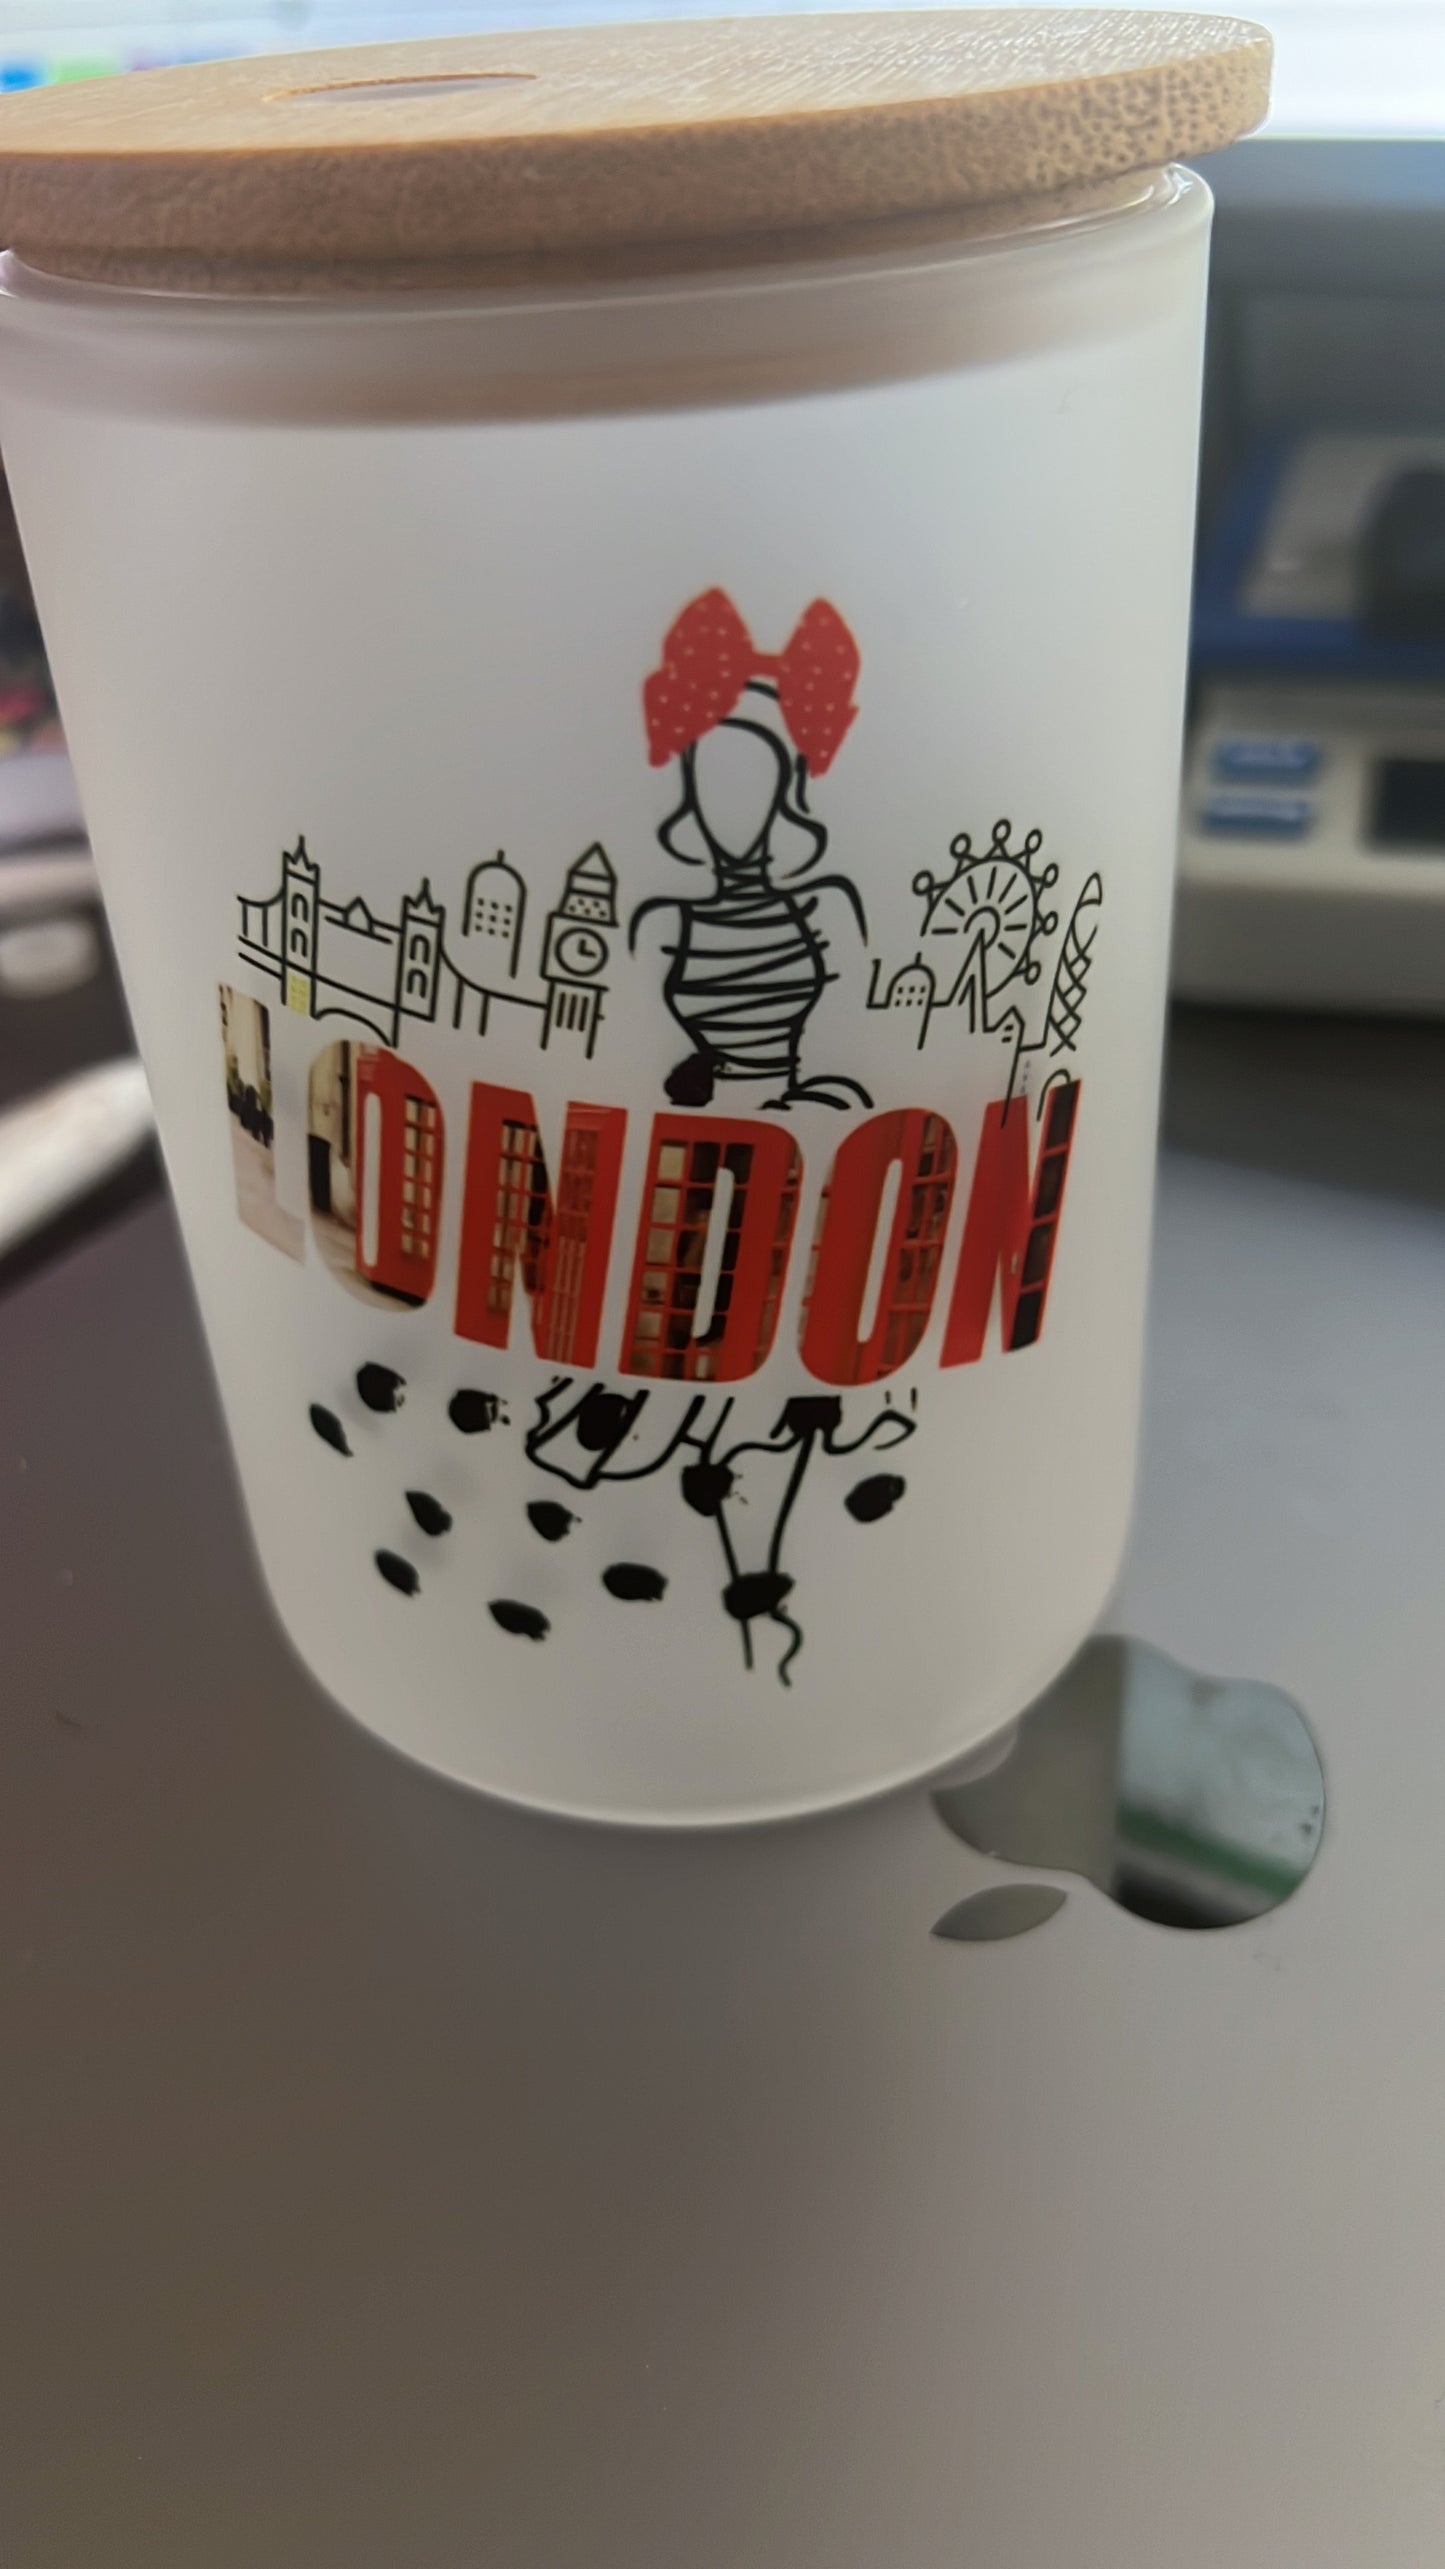 London Frosted Mug